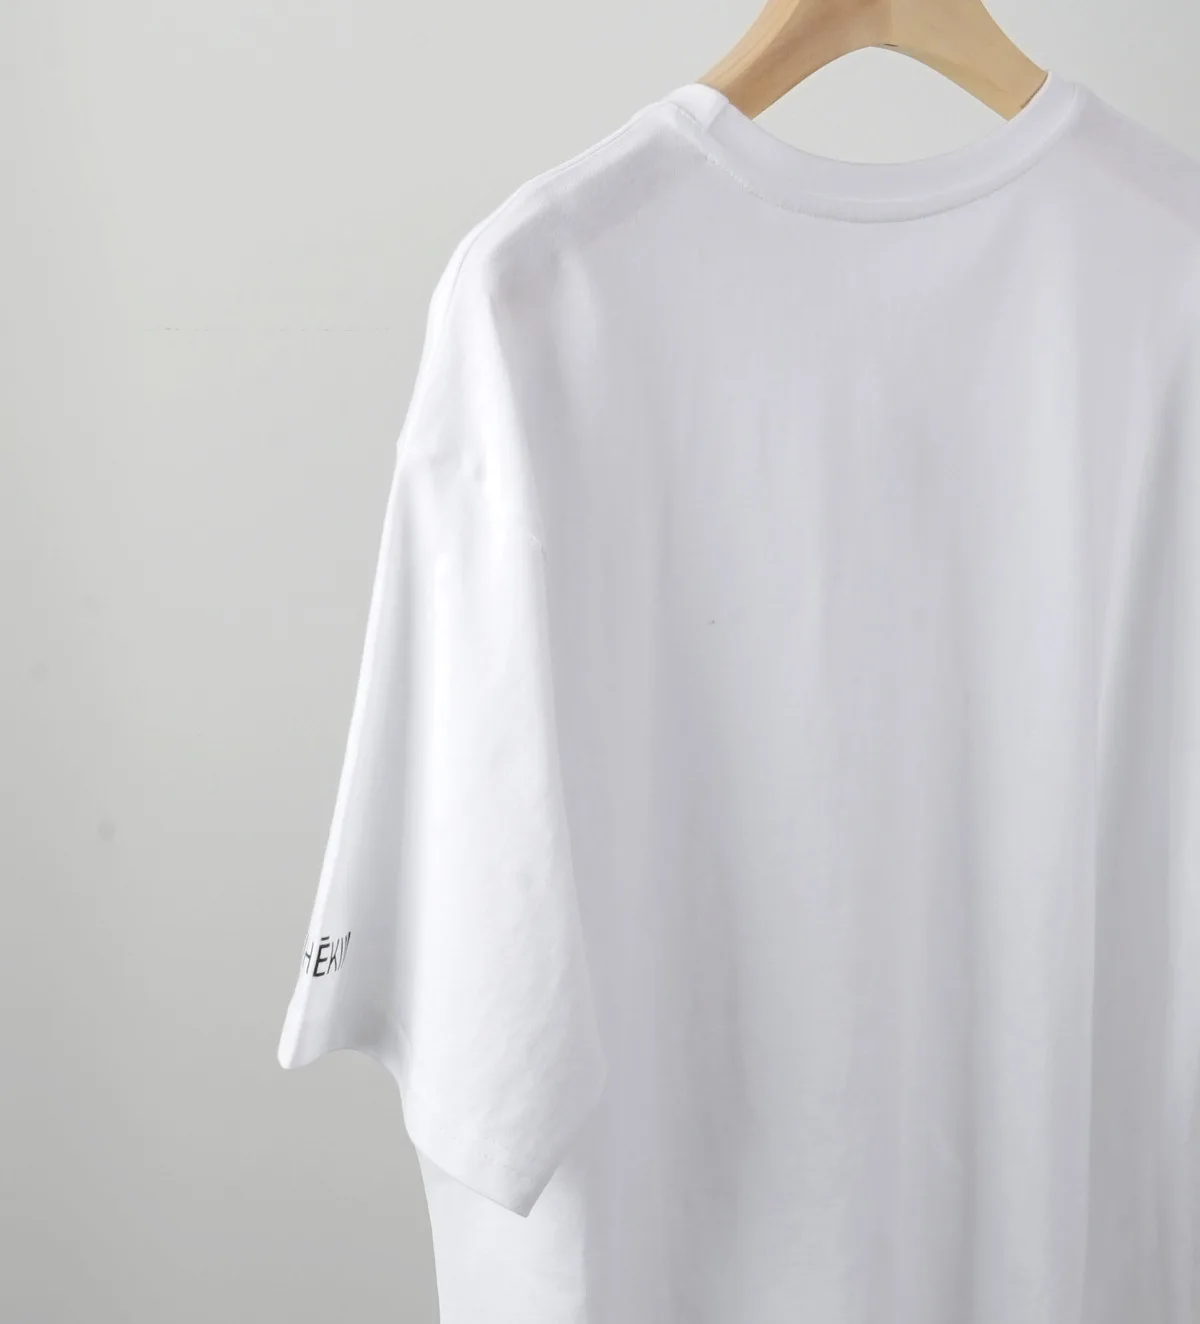 2021 De La Primavera Verano De La Mujer T-Camisa De Señora O-Cuello Suelto Amor Impresión Del Patrón De Manga Corta Camiseta Blanca Superior 3